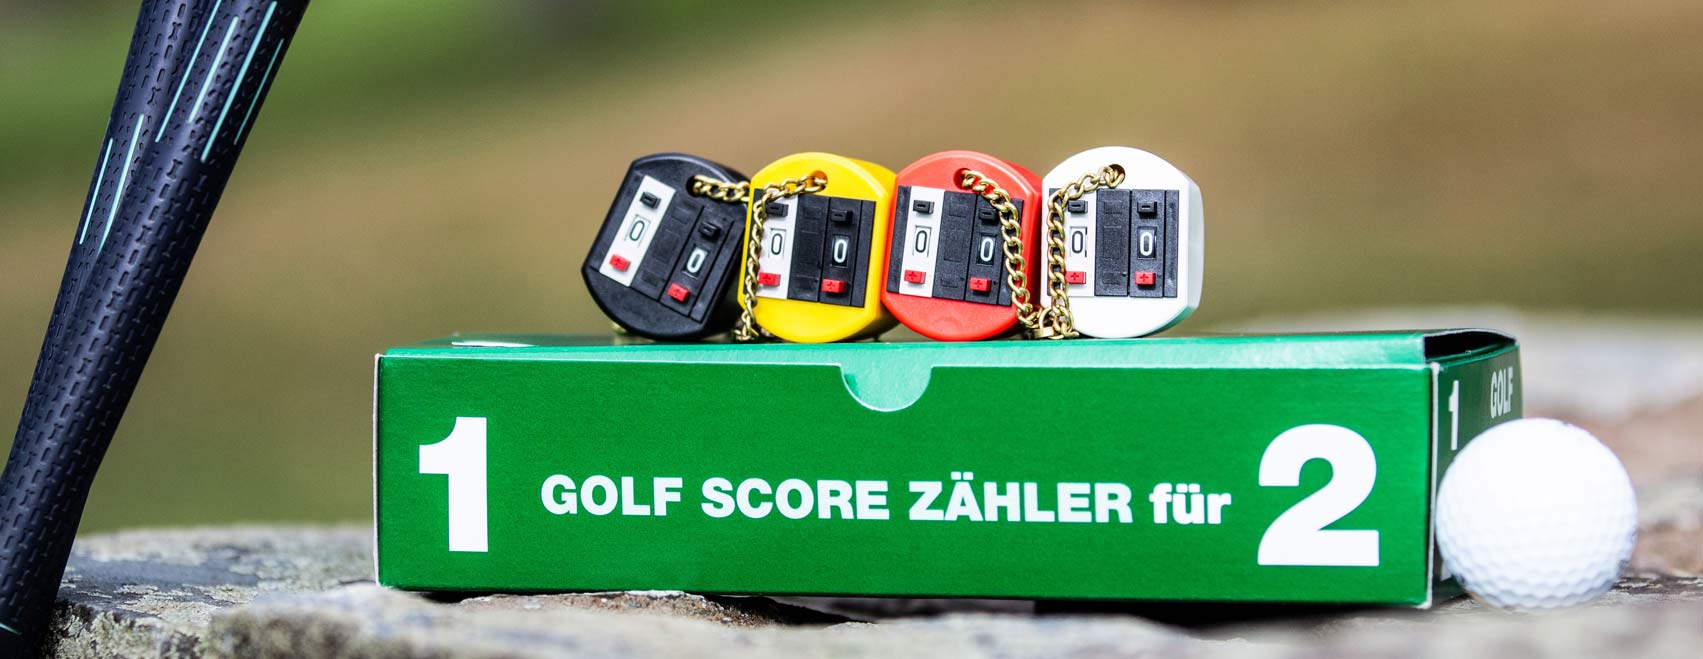 Schallehn GolfScoreZähler auf Verpackungsbox